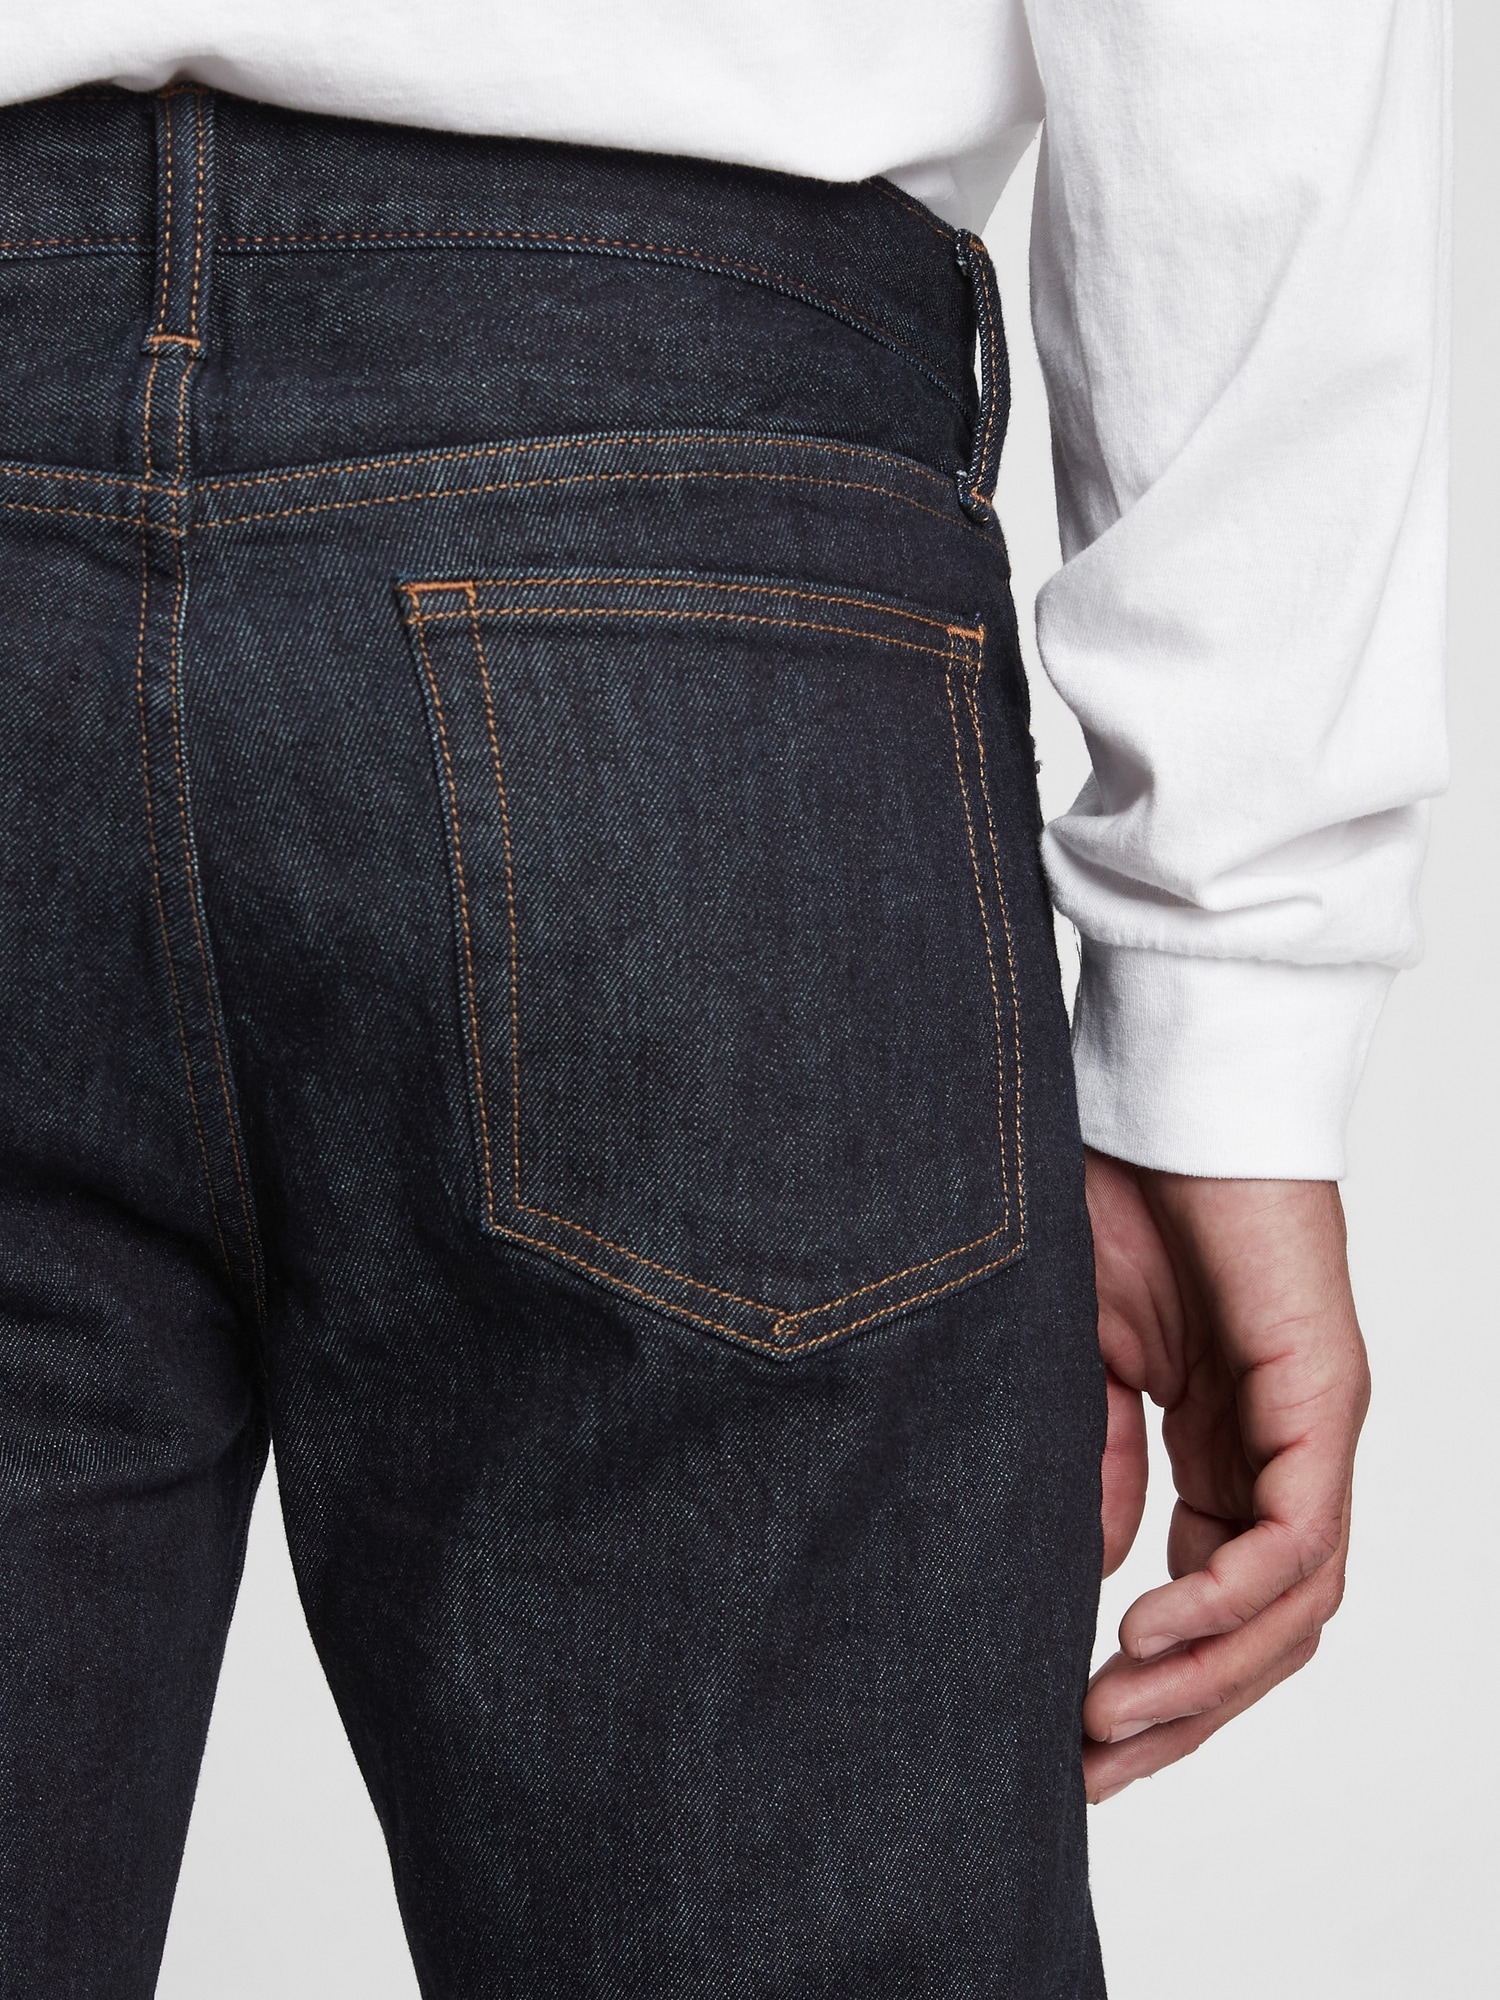 Gap Slim Jeans In Gapflex Light Wash  Slim straight jeans, Mens jeans  slim, Slim jeans